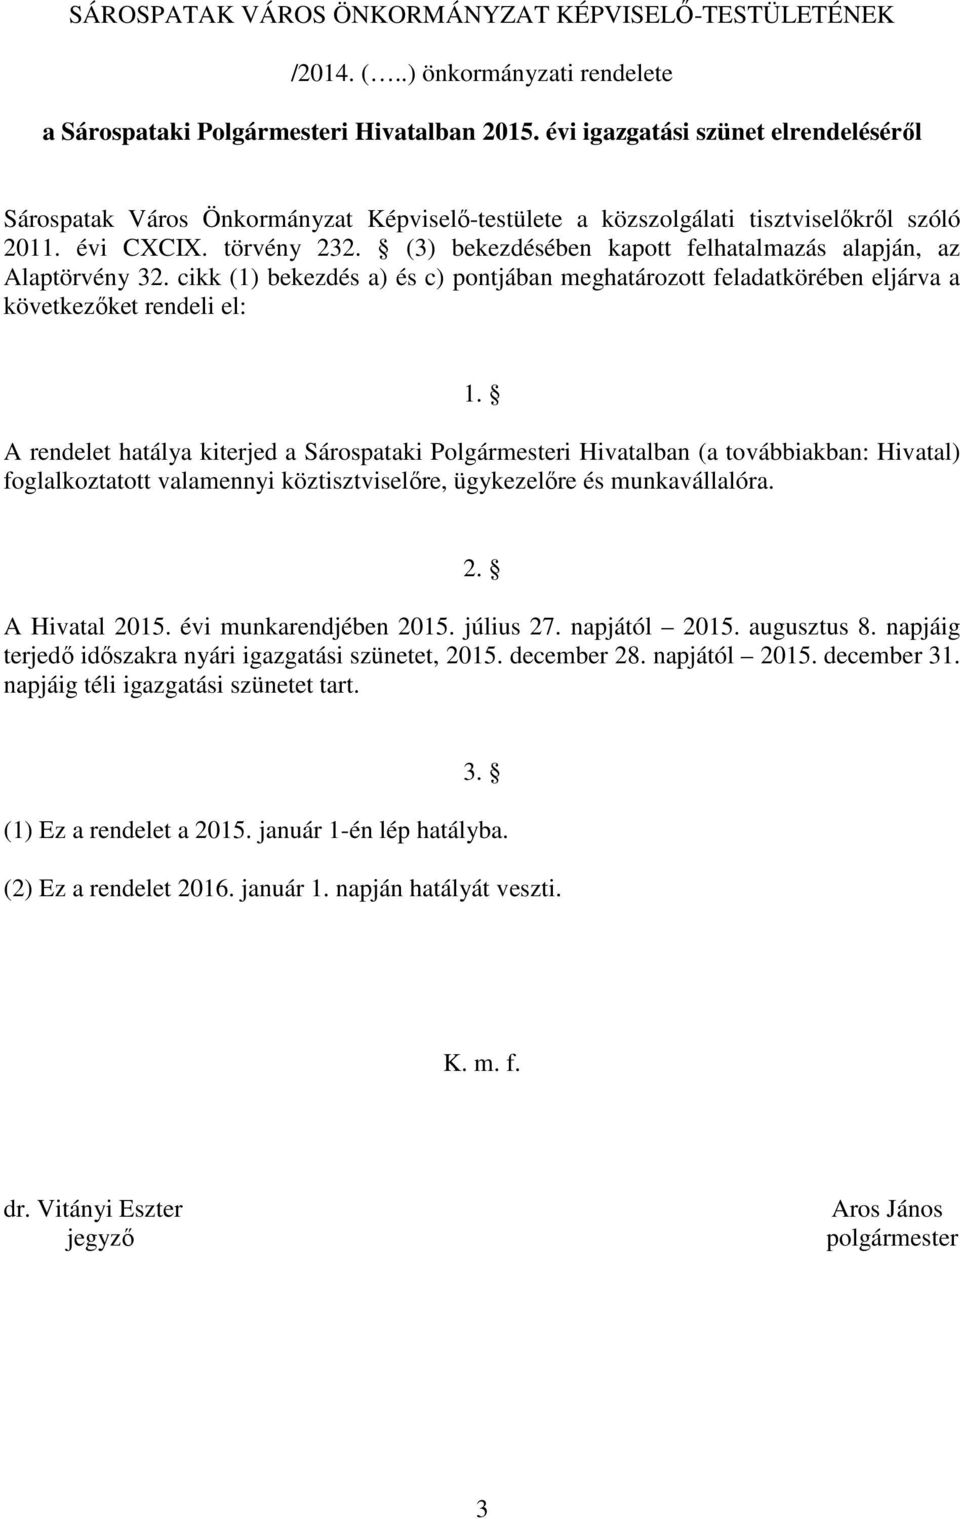 A rendelet hatálya kiterjed a Sárospataki Polgármesteri Hivatalban (a továbbiakban: Hivatal) foglalkoztatott valamennyi köztisztviselőre, ügykezelőre és munkavállalóra. 2. A Hivatal 2015.